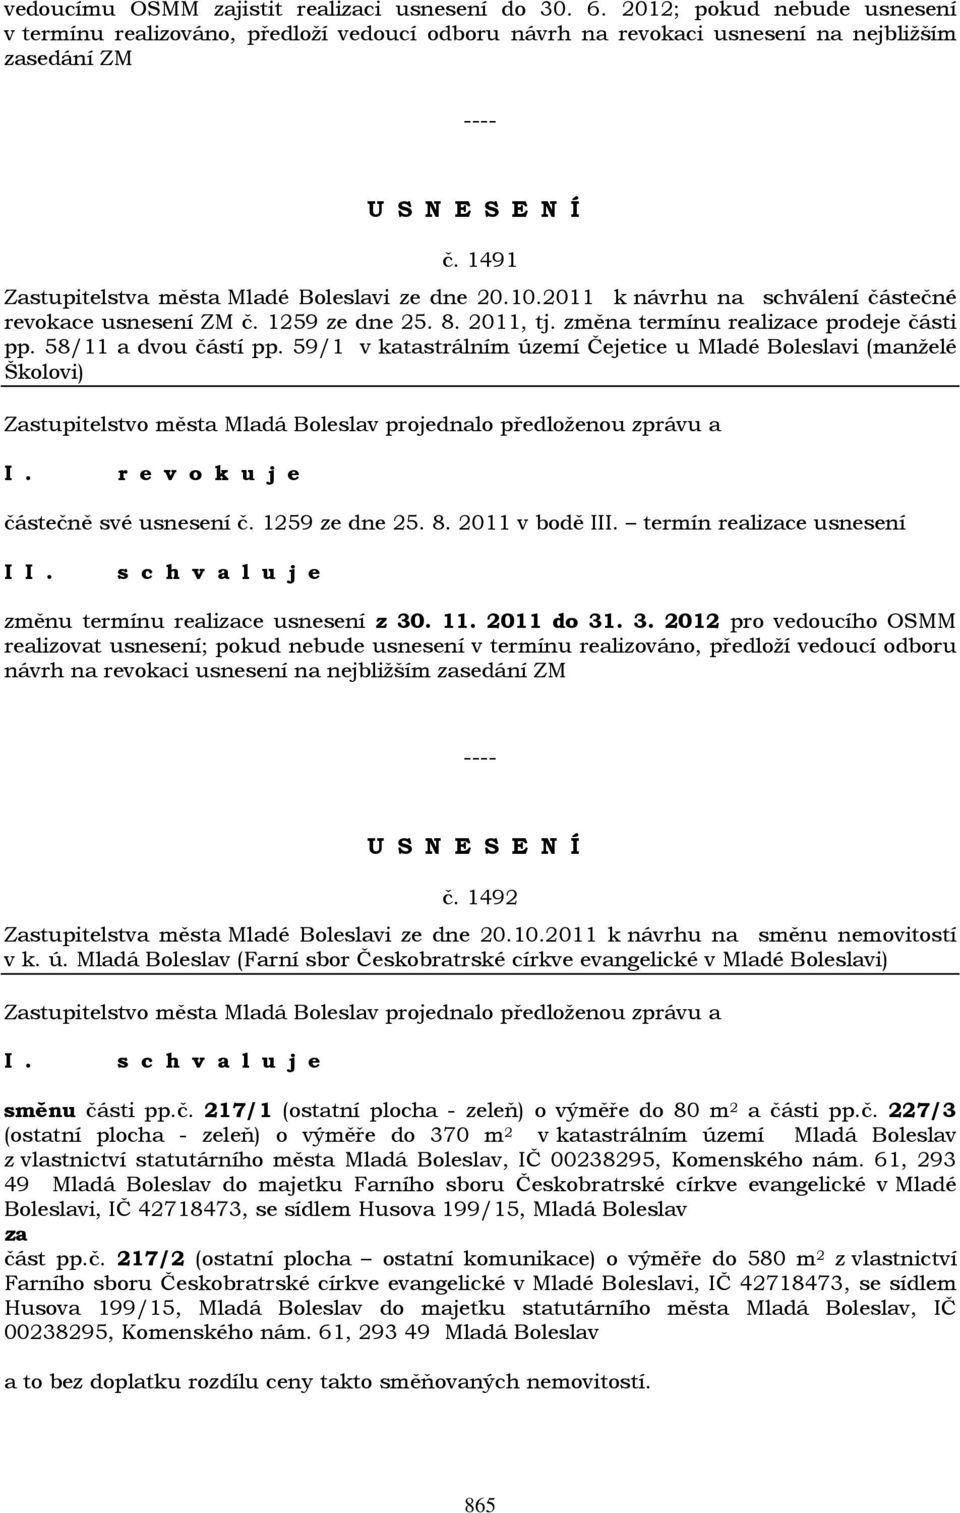 58/11 a dvou částí pp. 59/1 v katastrálním území Čejetice u Mladé Boleslavi (manželé Školovi) r e v o k u j e částečně své usnesení č. 1259 ze dne 25. 8. 2011 v bodě III.